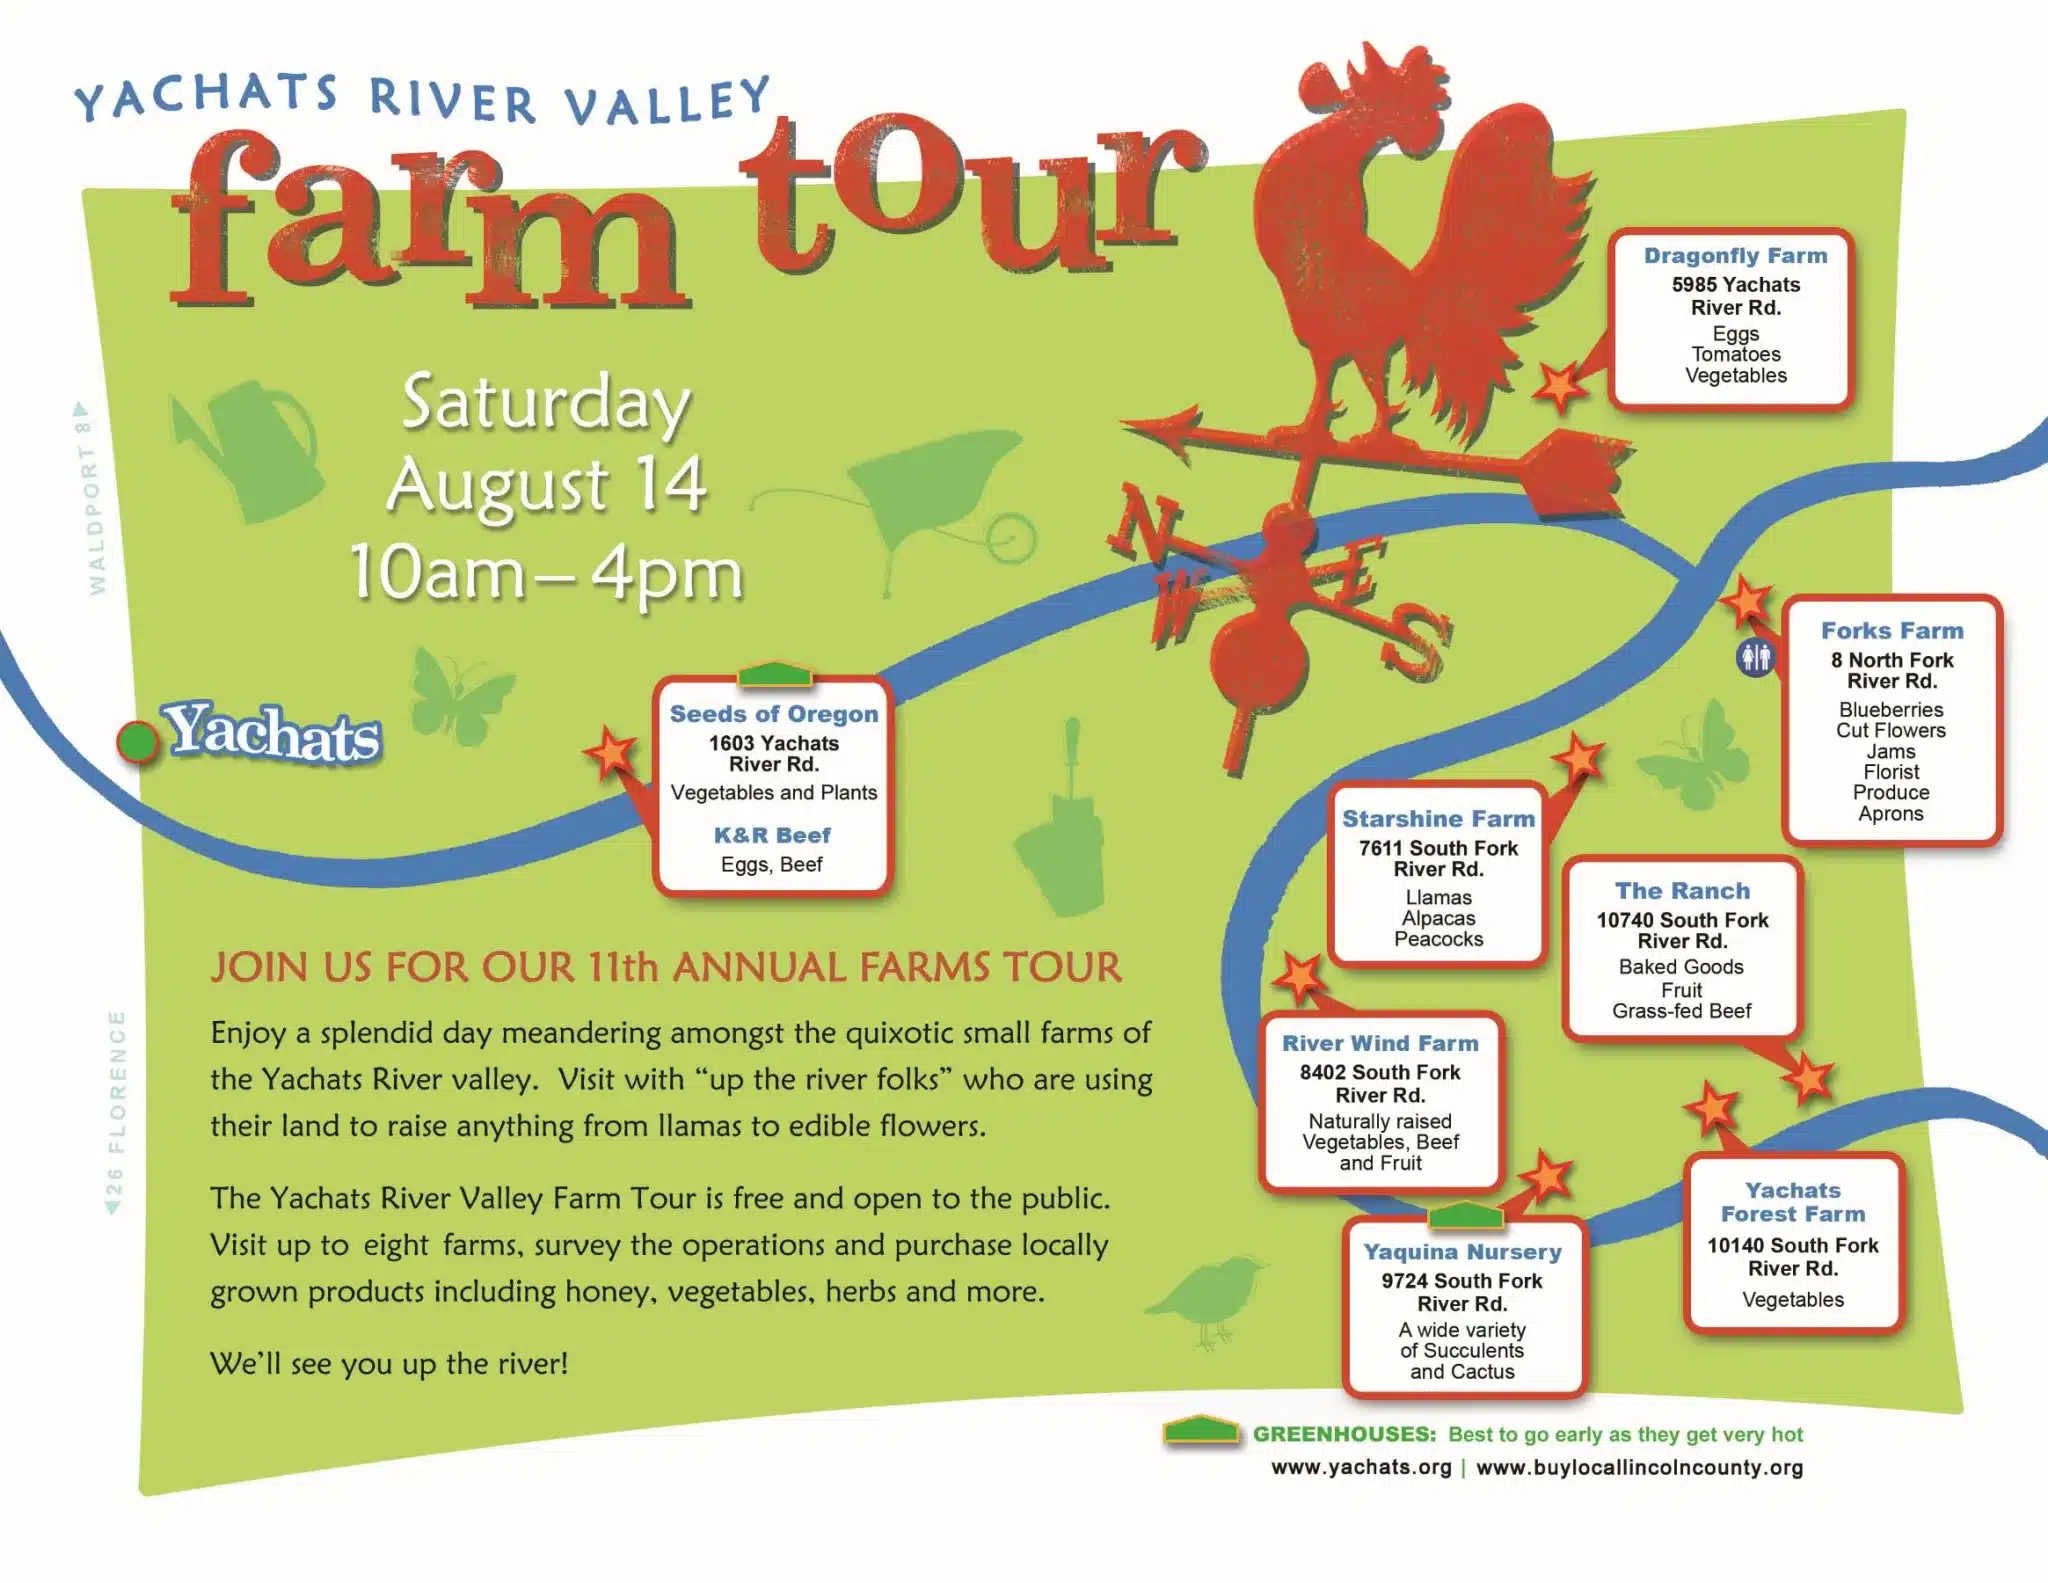 Yachats River Valley Farm Tour